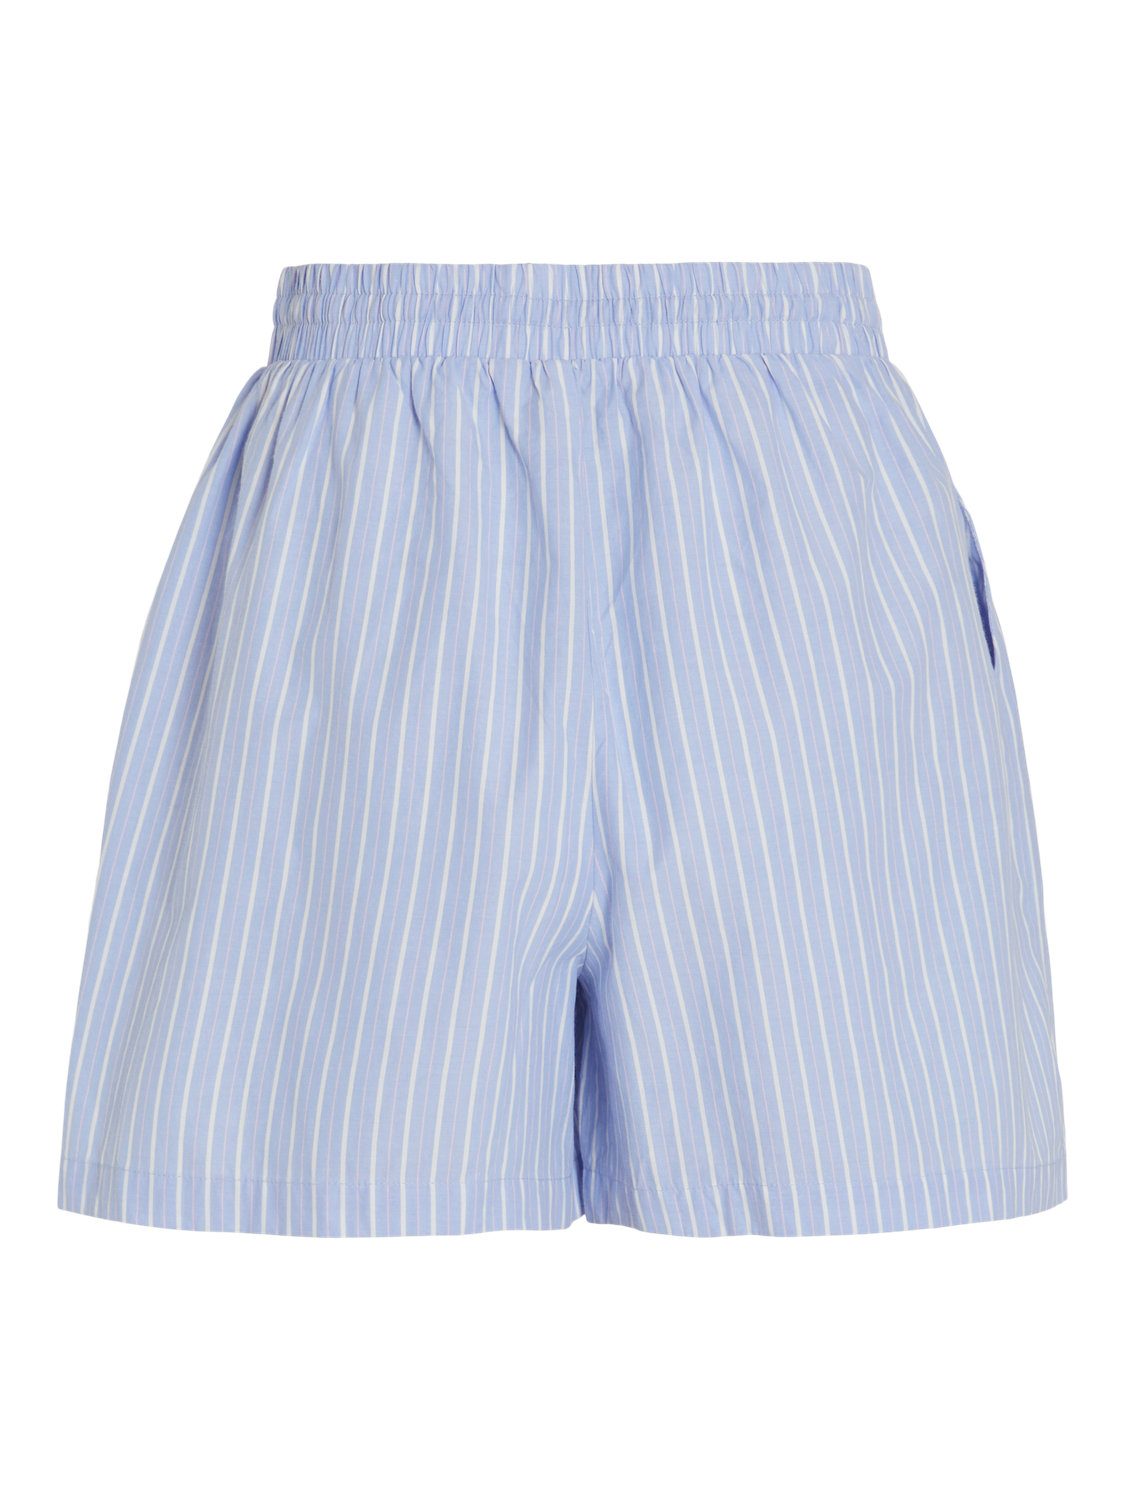 VIAPOLLE Shorts - Kentucky Blue